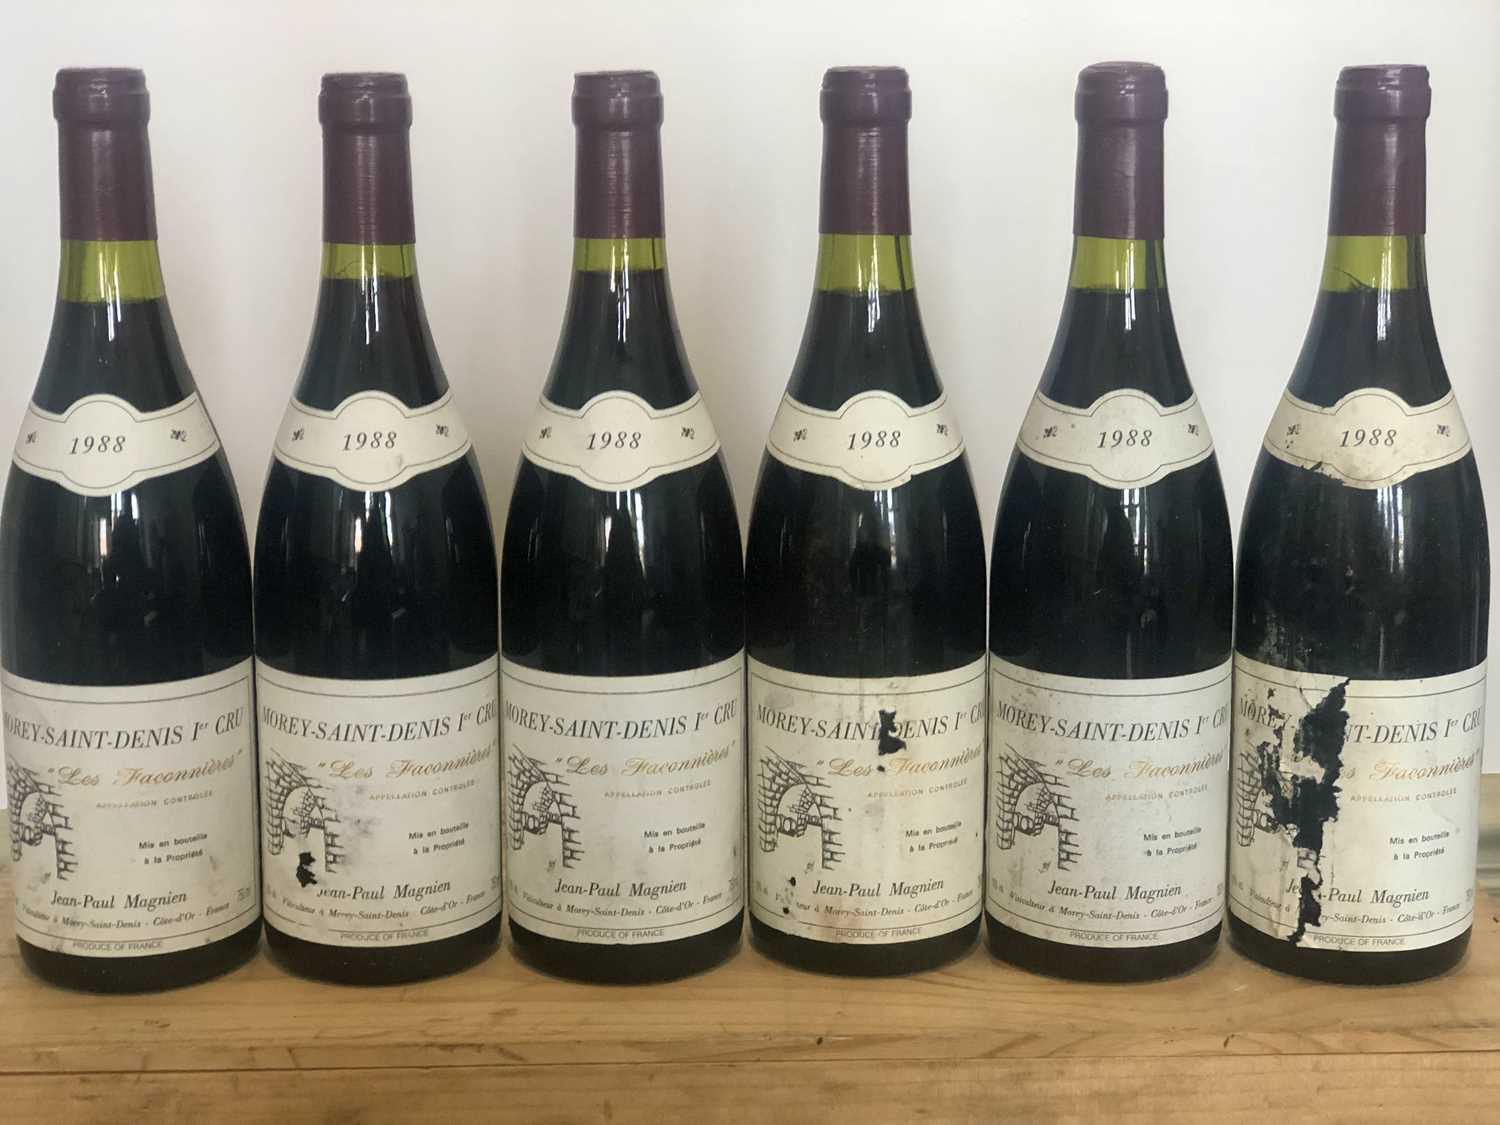 Lot 74 - 6 bottles Morey St Denis Premier Cru ‘Les Faconnieres’ Domaine Jean-Paul Magnien 1988